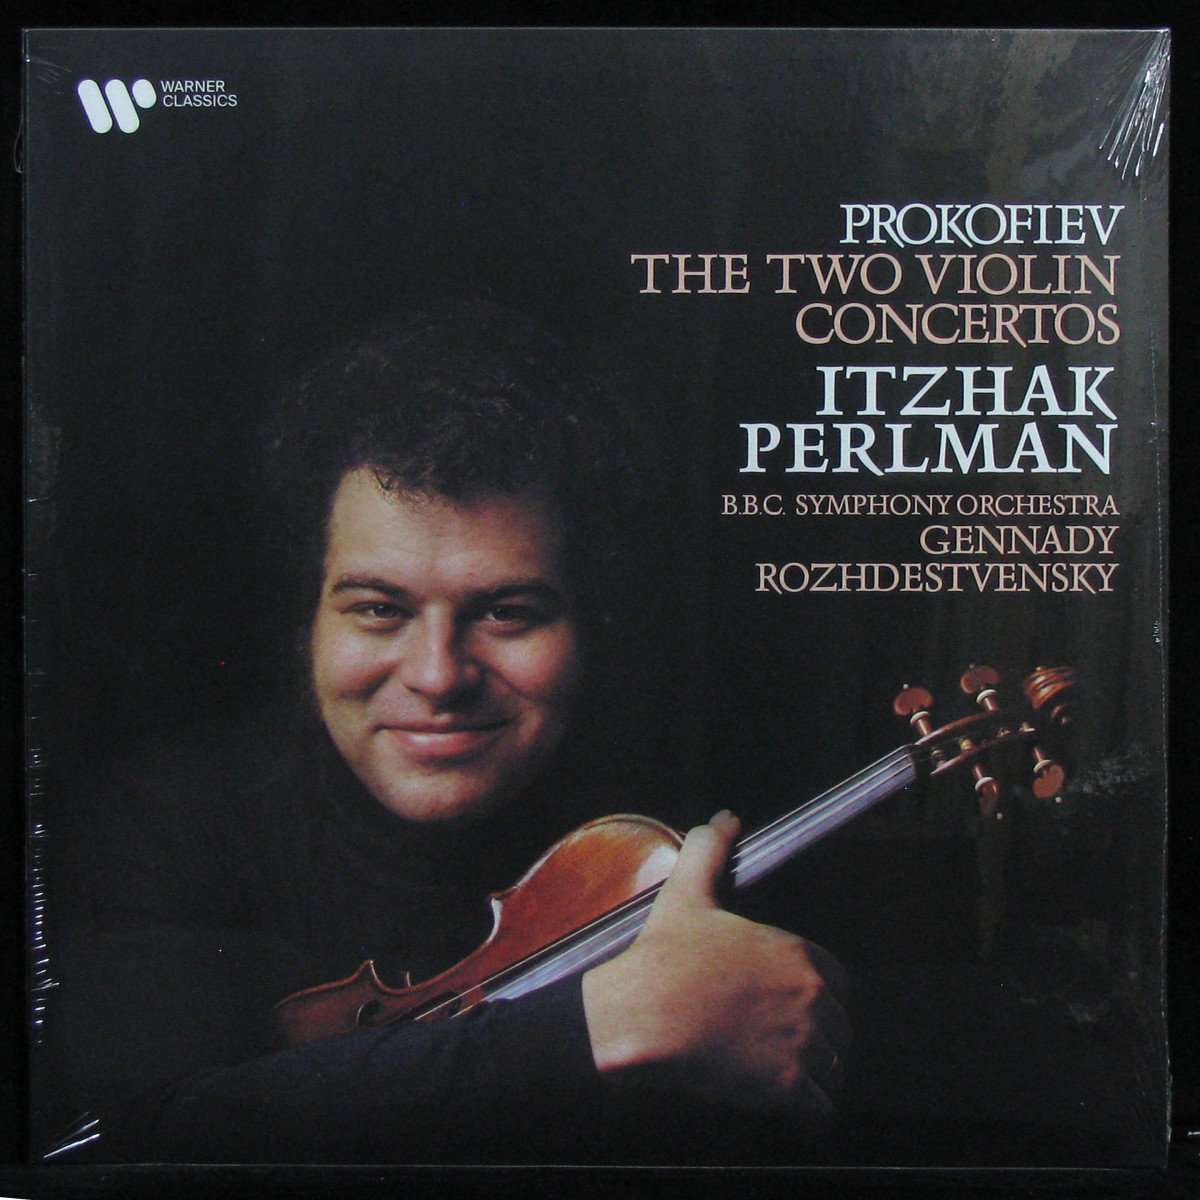 Prokofiev: The Two Violin Concertos